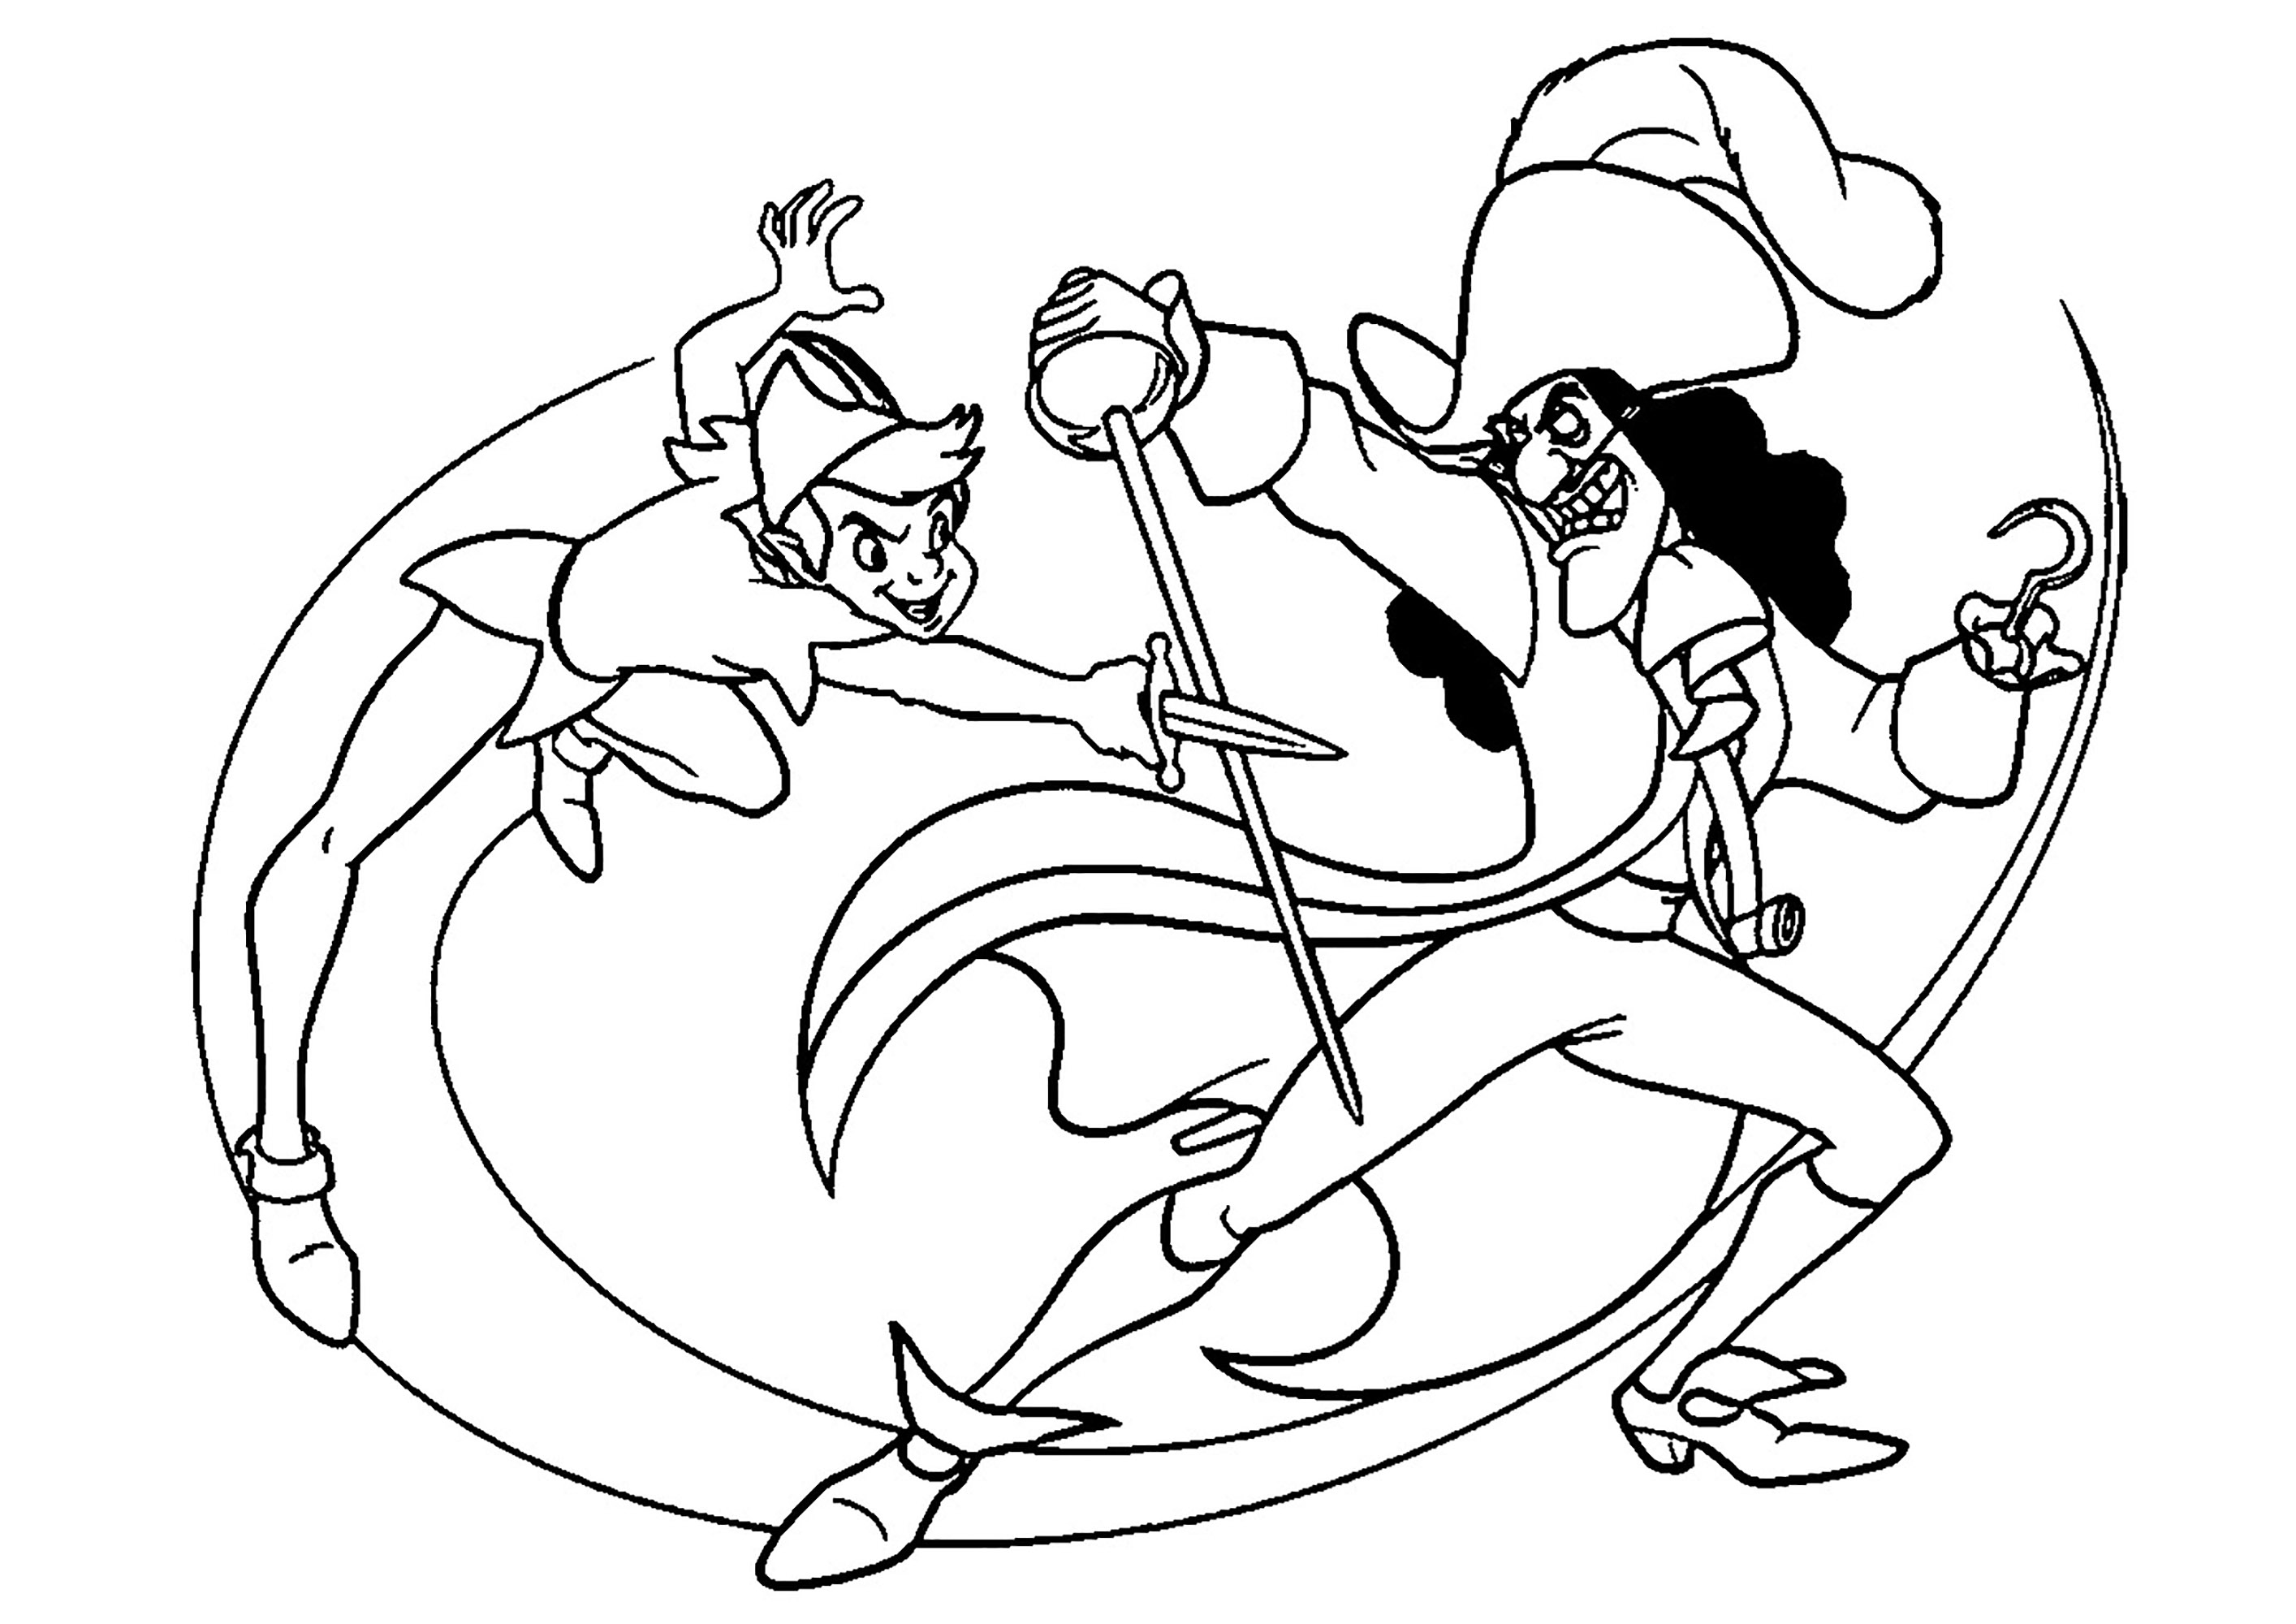 Combat d'epée entre Peter Pan et le Capitaine Crochet